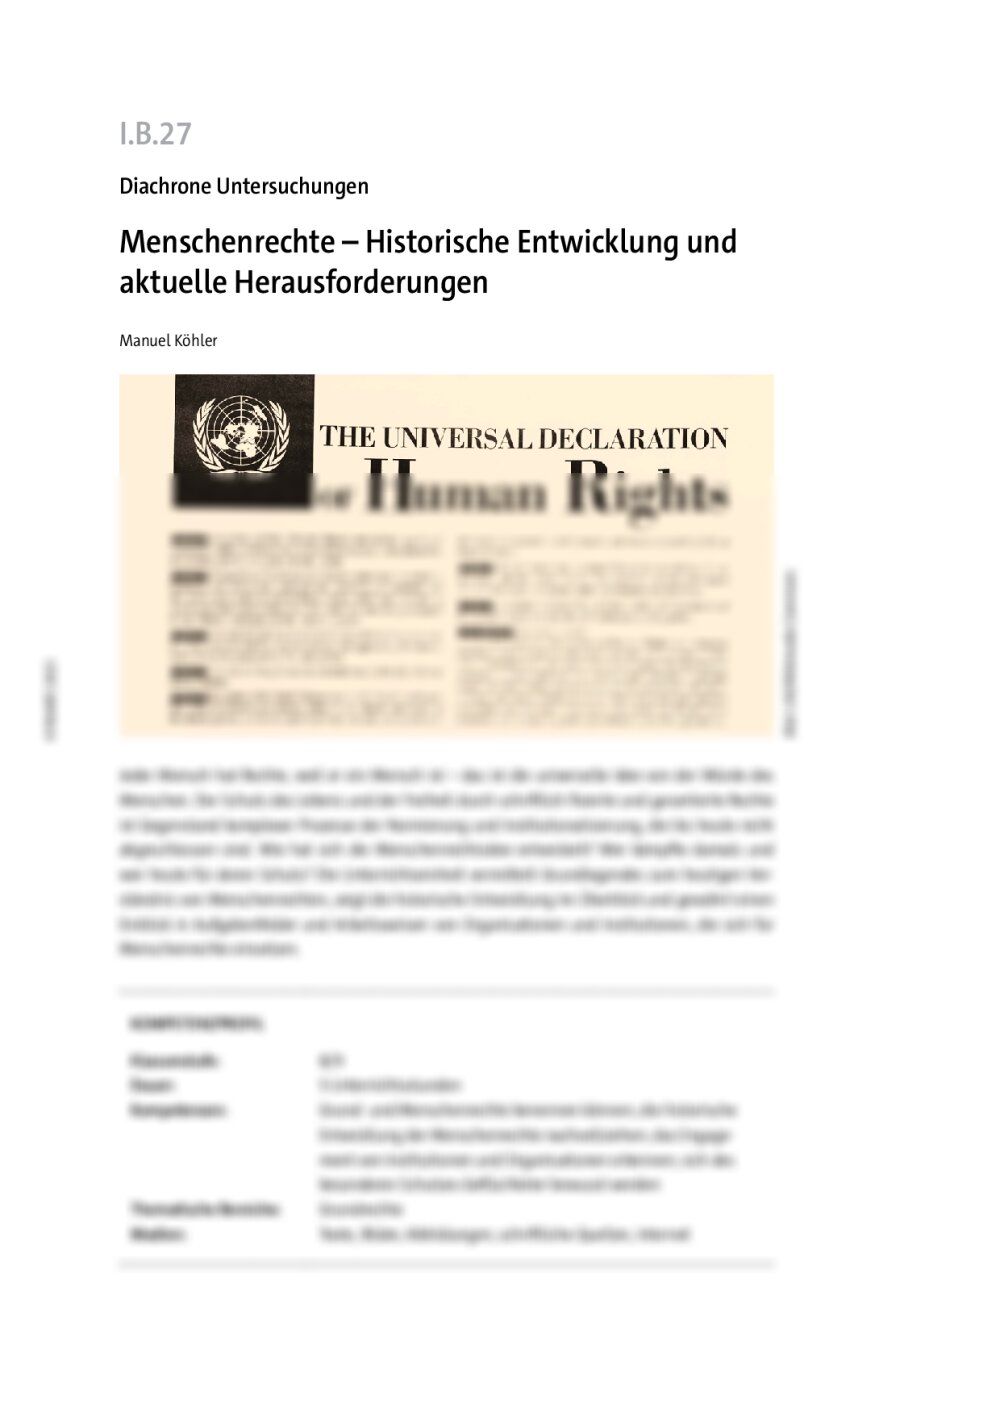 Menschenrechte - Seite 1